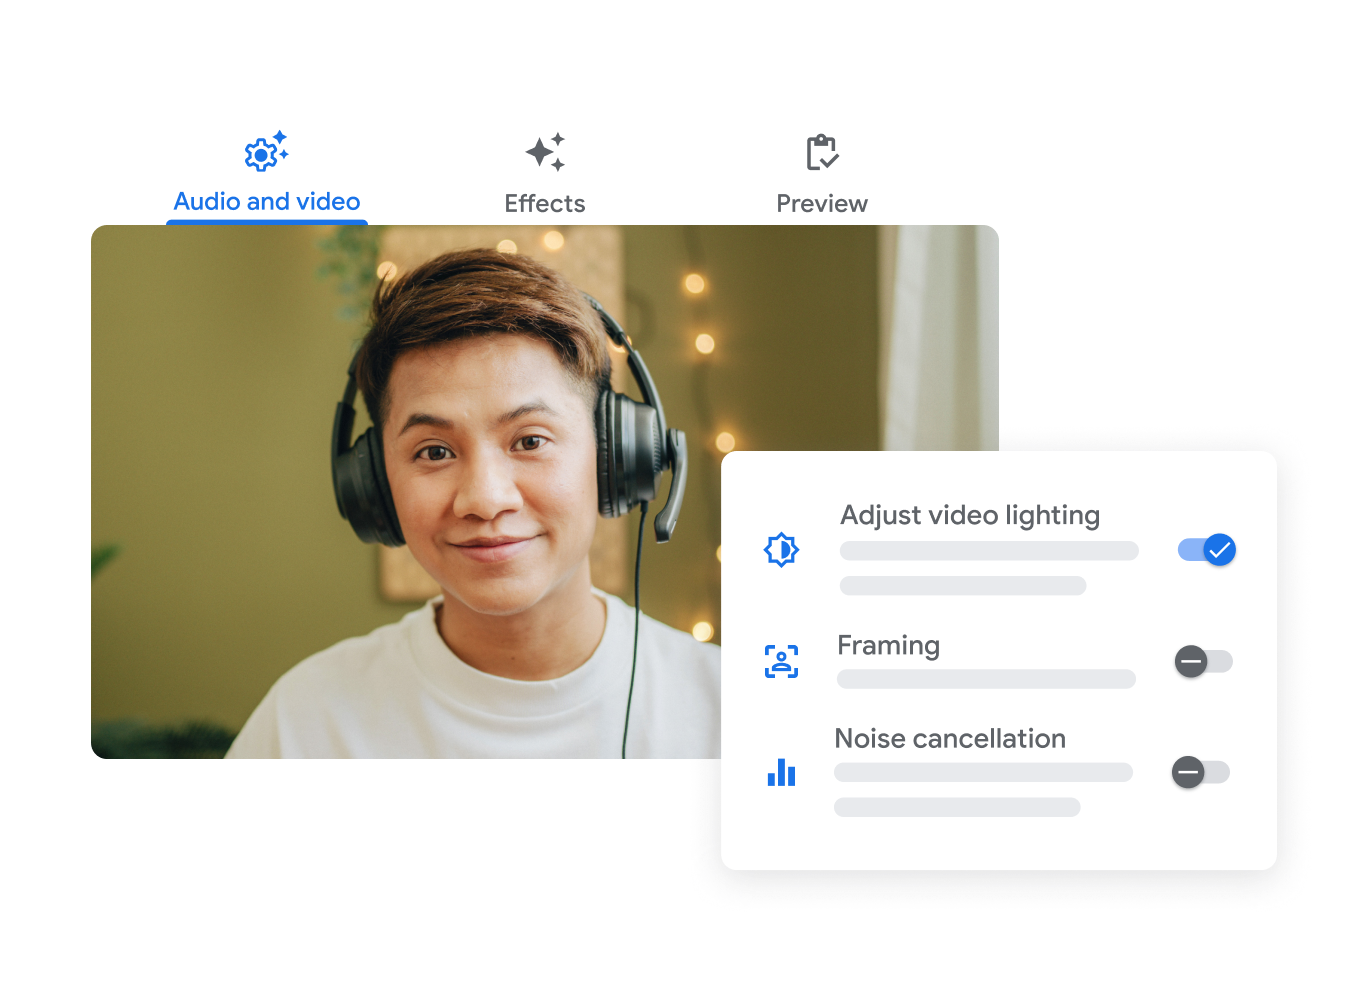 واجهة المستخدم في Google Meet تظهر فيها ميزات تعديل إضاءة الفيديو وضبط الإطار وإلغاء الضوضاء.